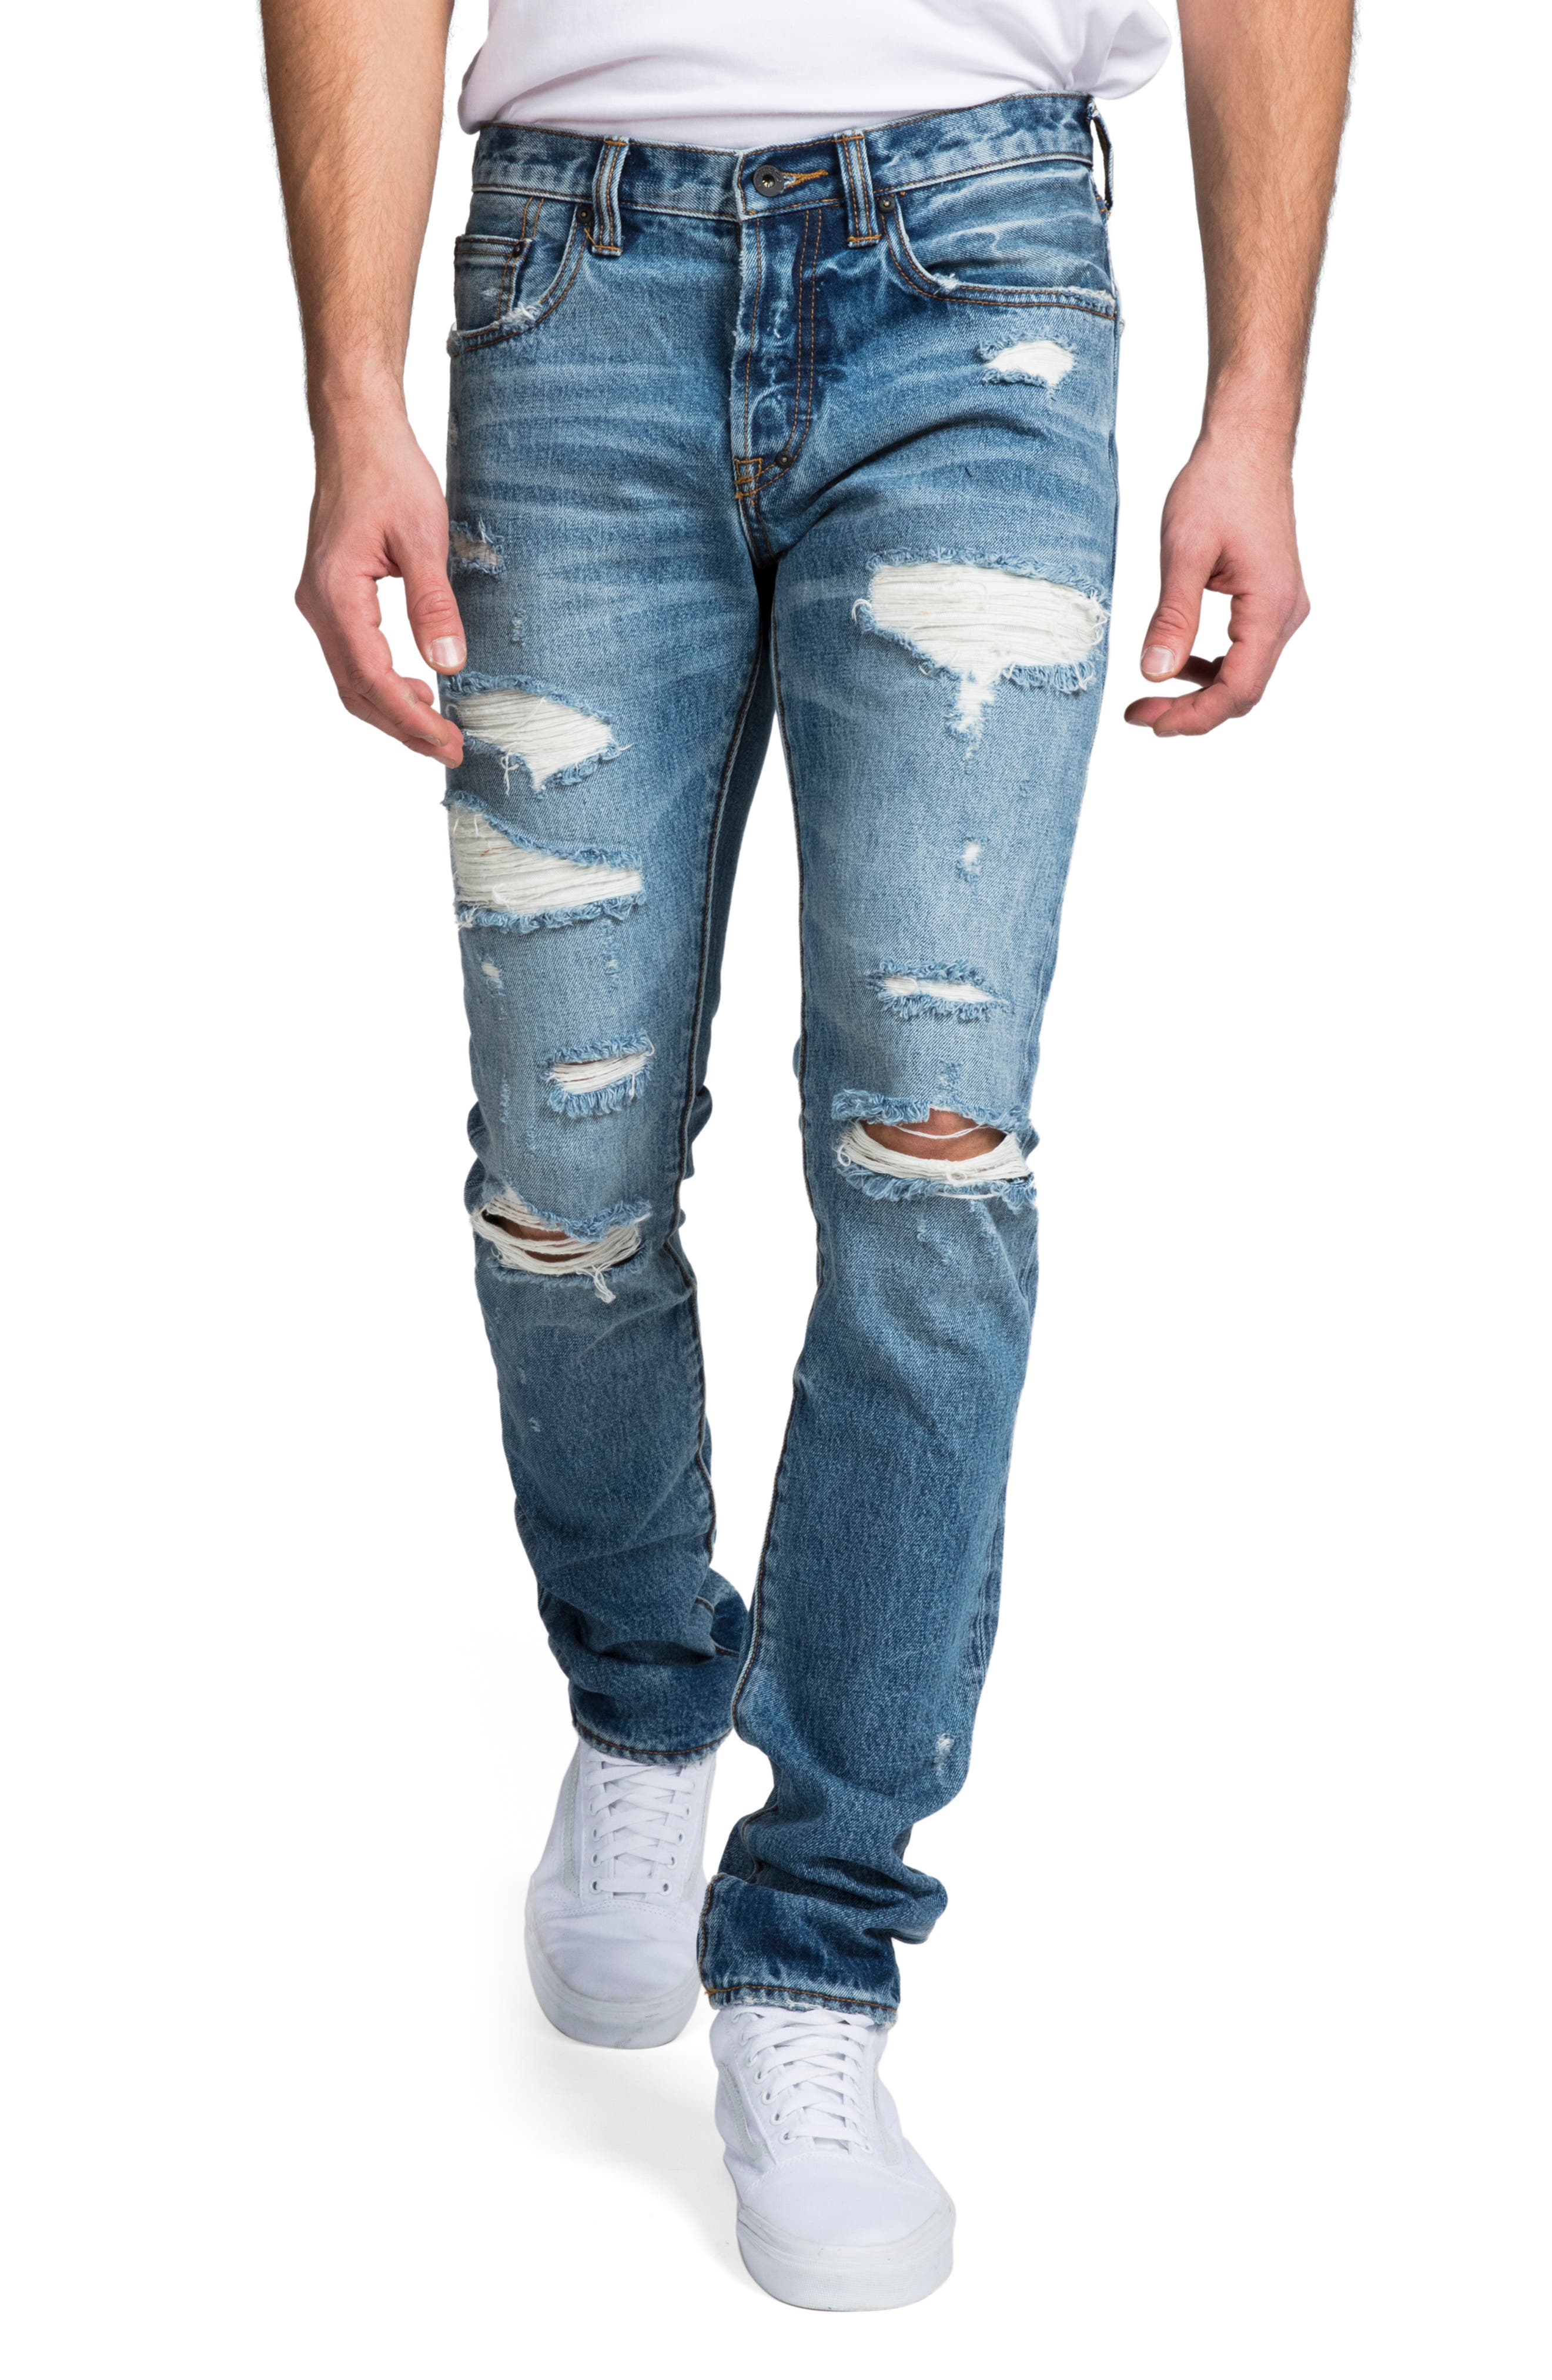 carhartt blaine jeans